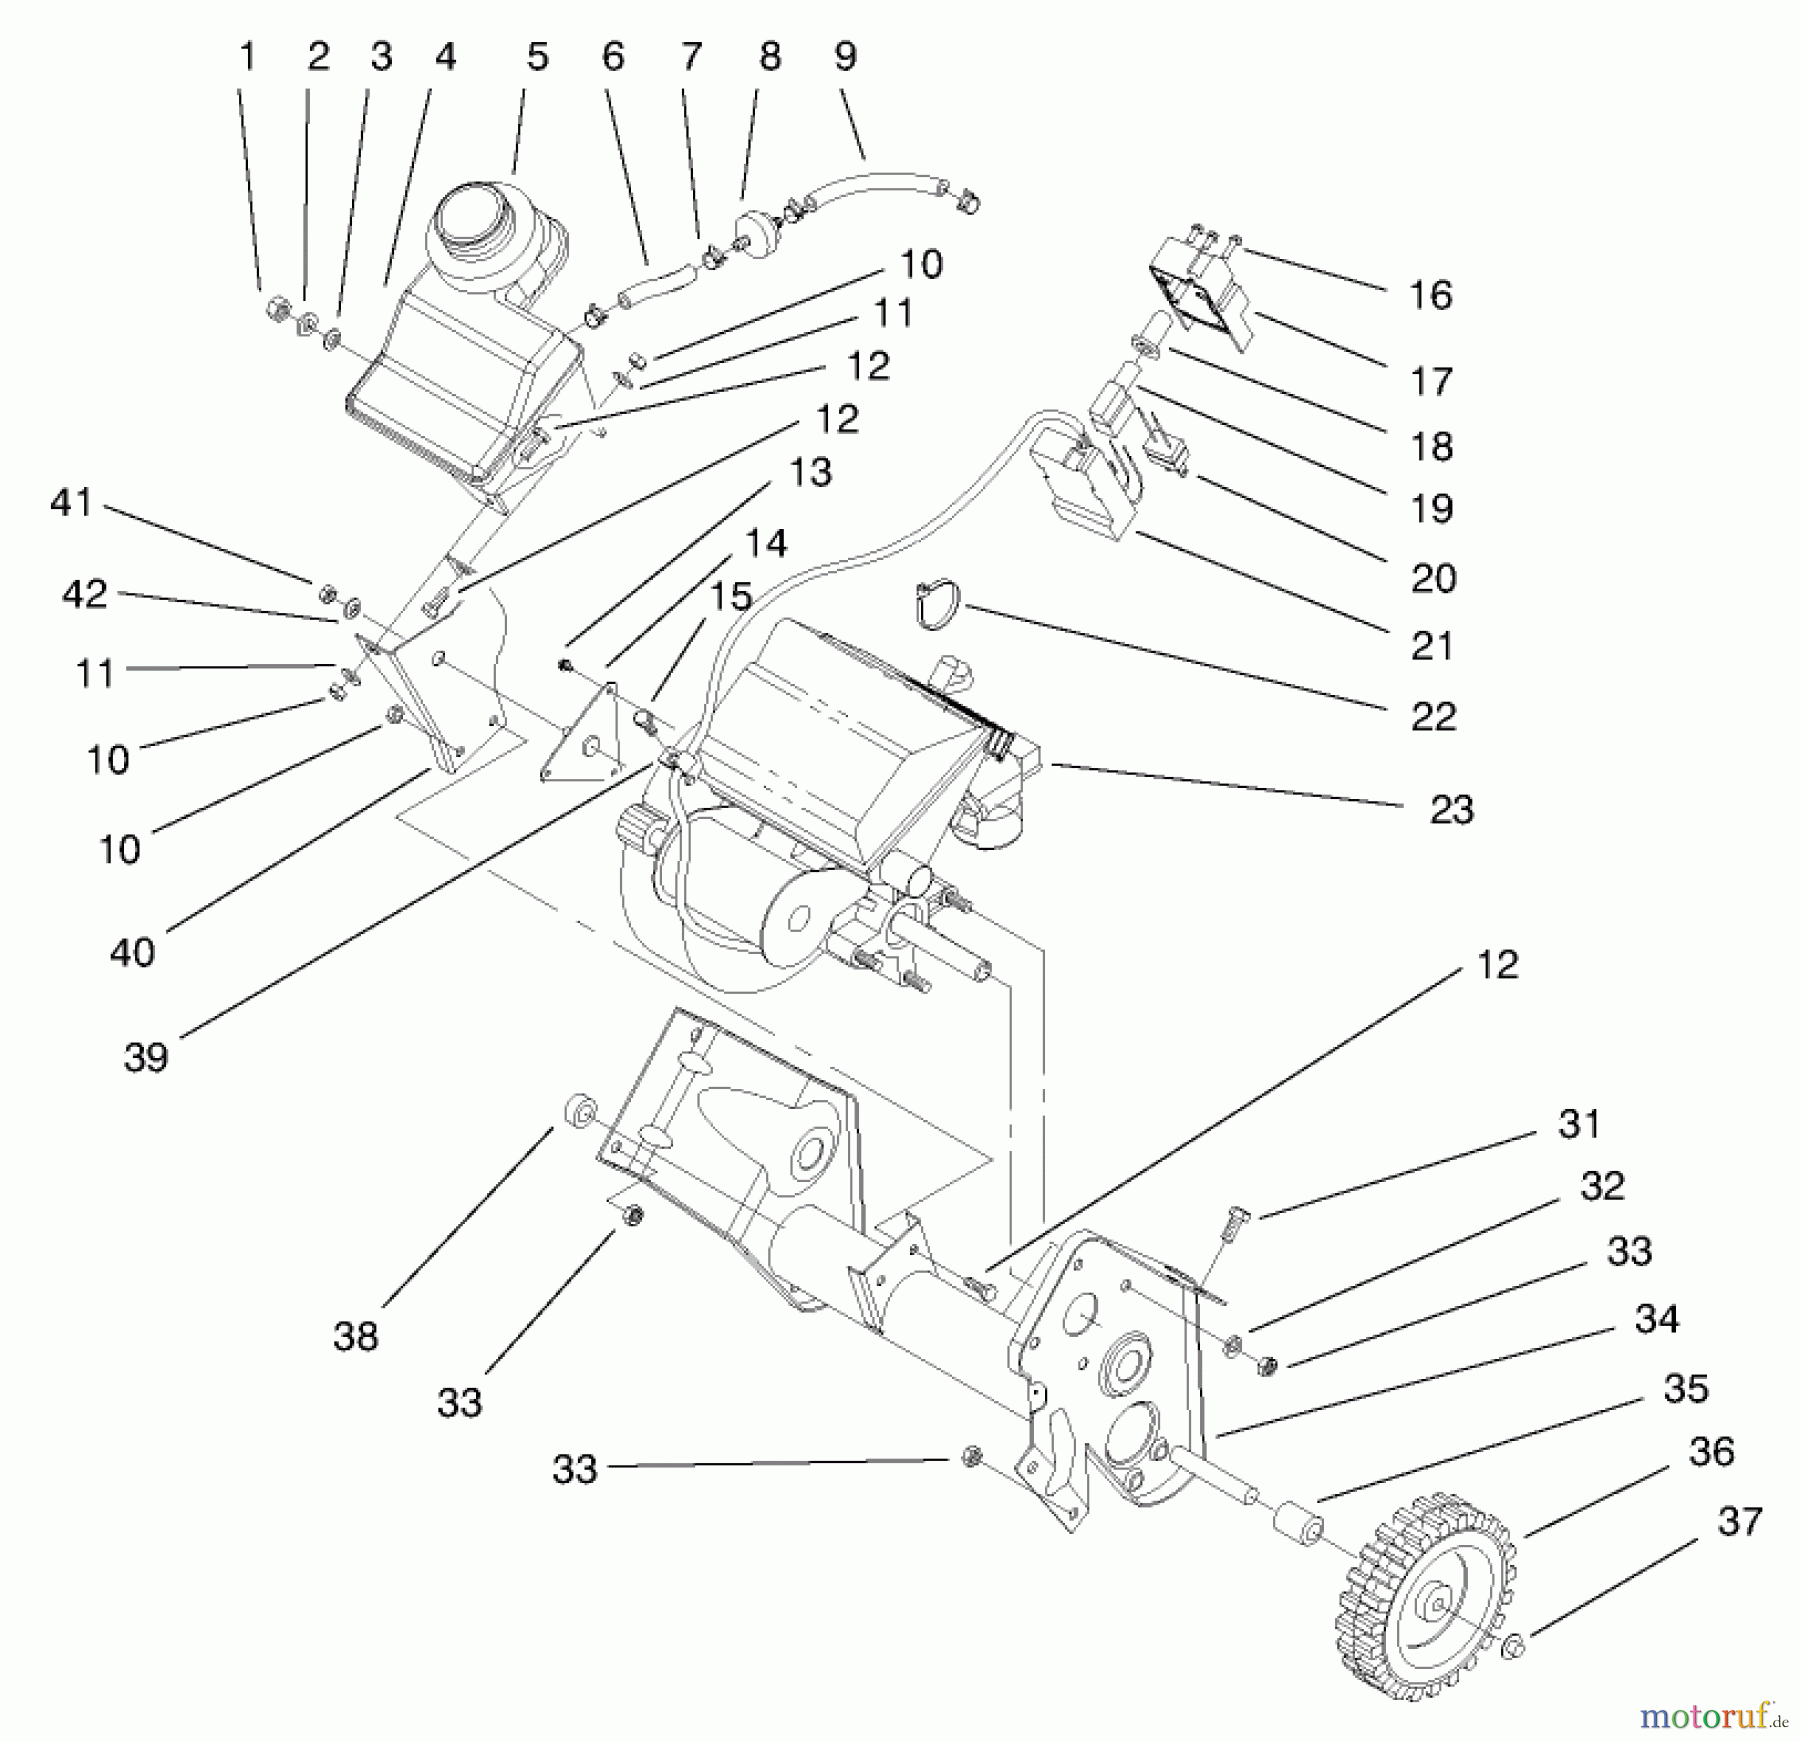  Toro Neu Snow Blowers/Snow Throwers Seite 1 38416 (2400) - Toro CCR 2400 Snowthrower, 1997 (7900001-7999999) ENGINE & FUEL TANK ASSEMBLY